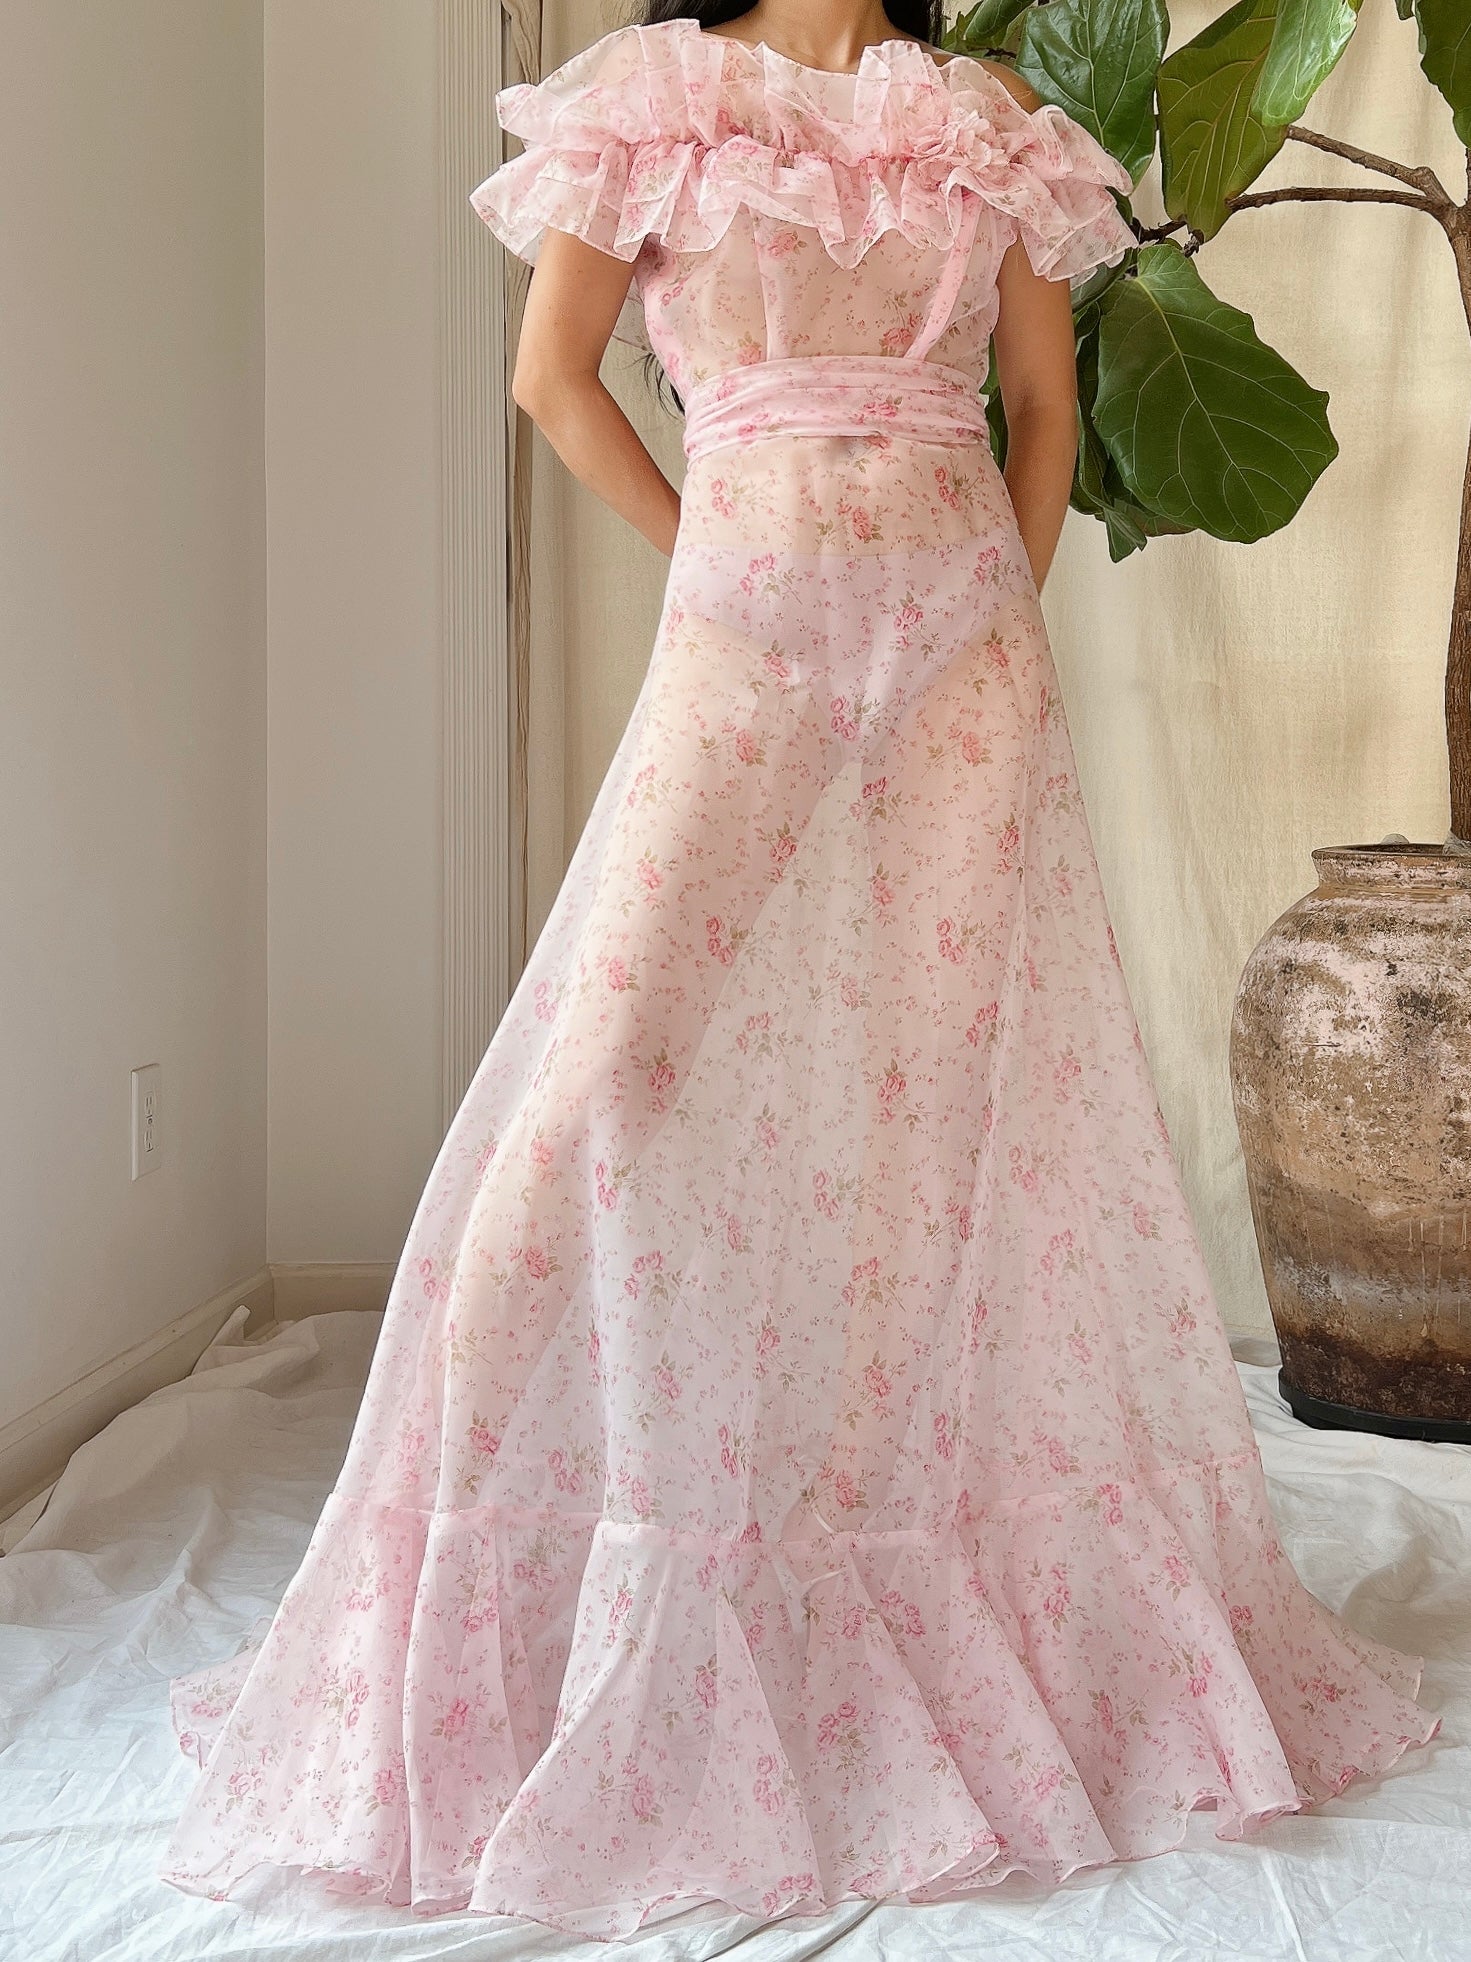 Vintage Floral Print Elastic Off-the-Shoulder Dress - XS/S